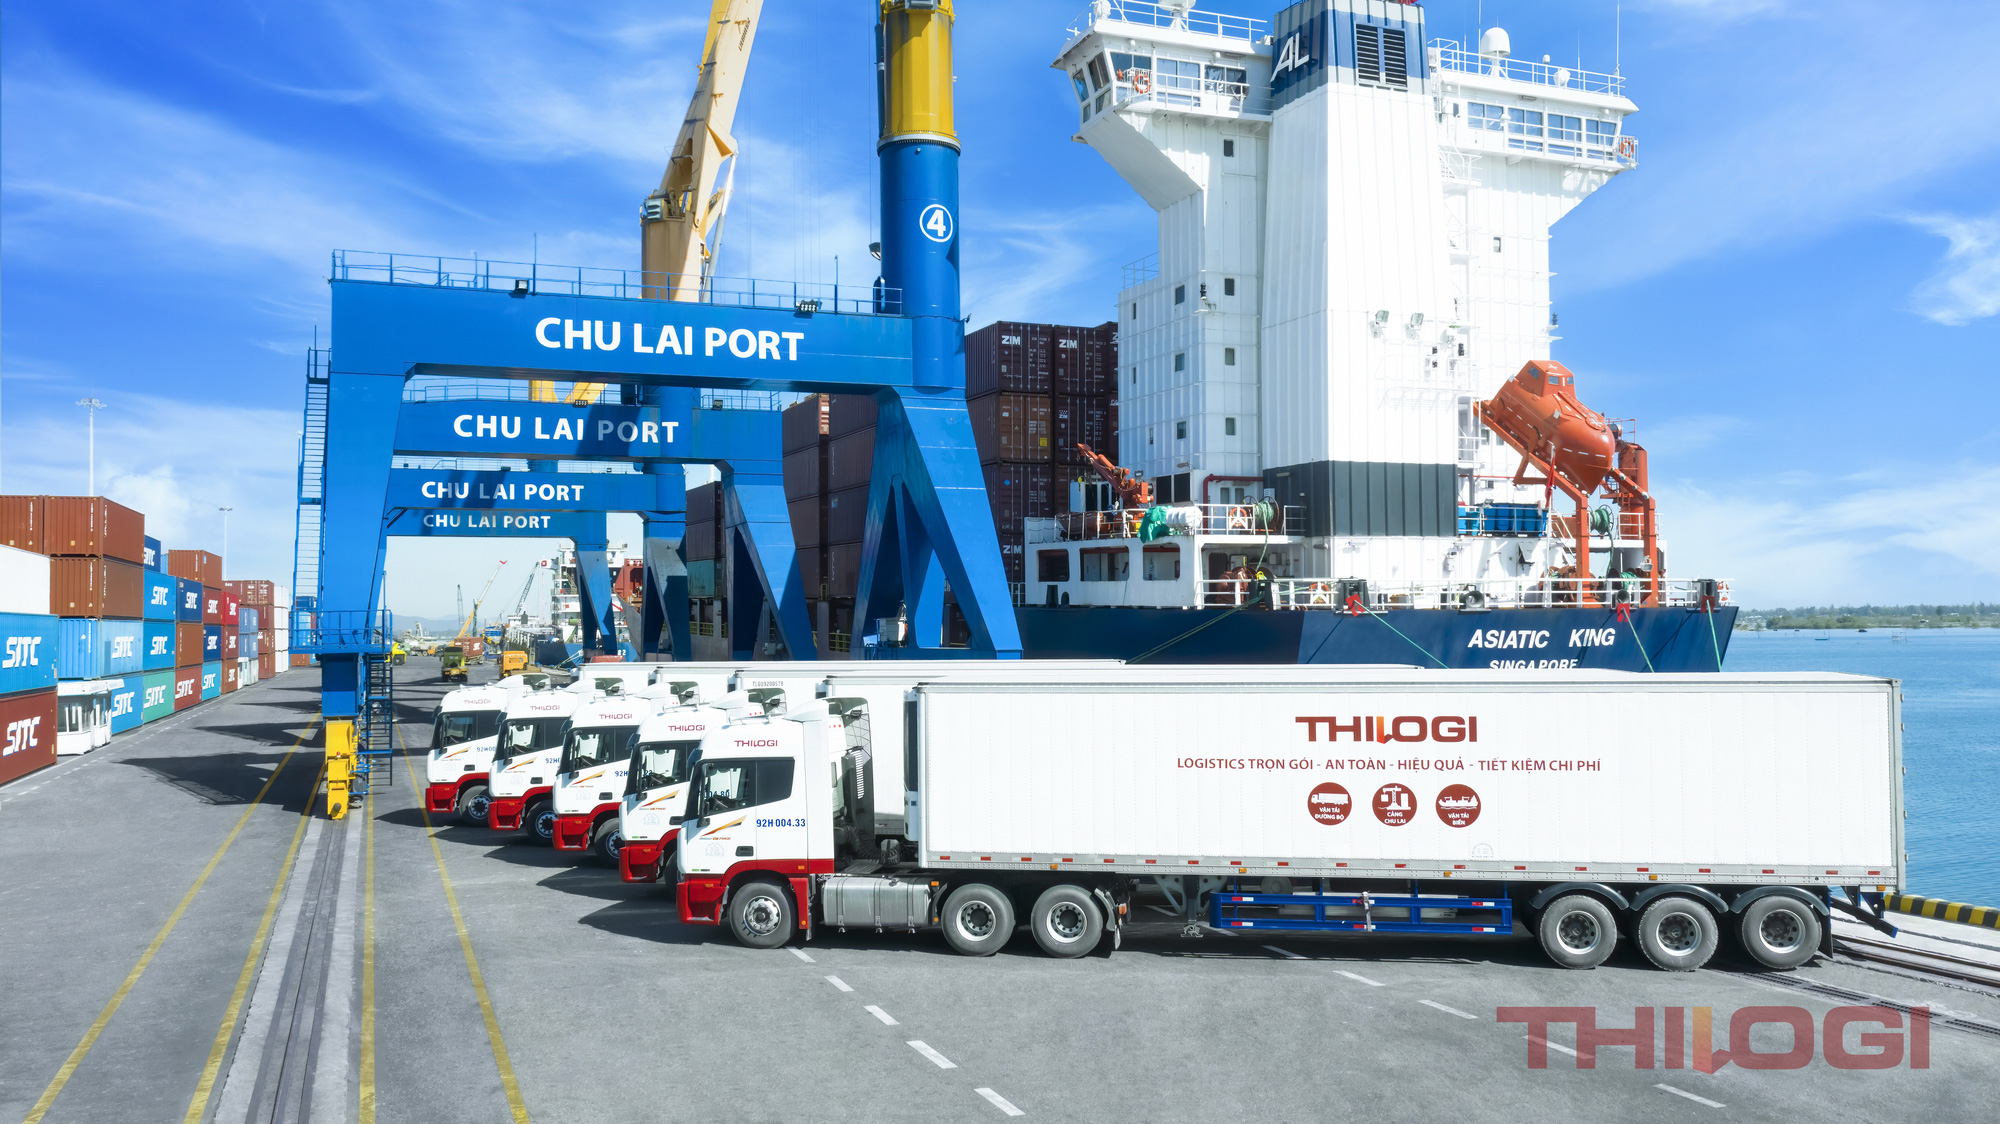 THILOGI phát triển dịch vụ logistics xuất khẩu nông sản với sản lượng lớn - Ảnh 3.